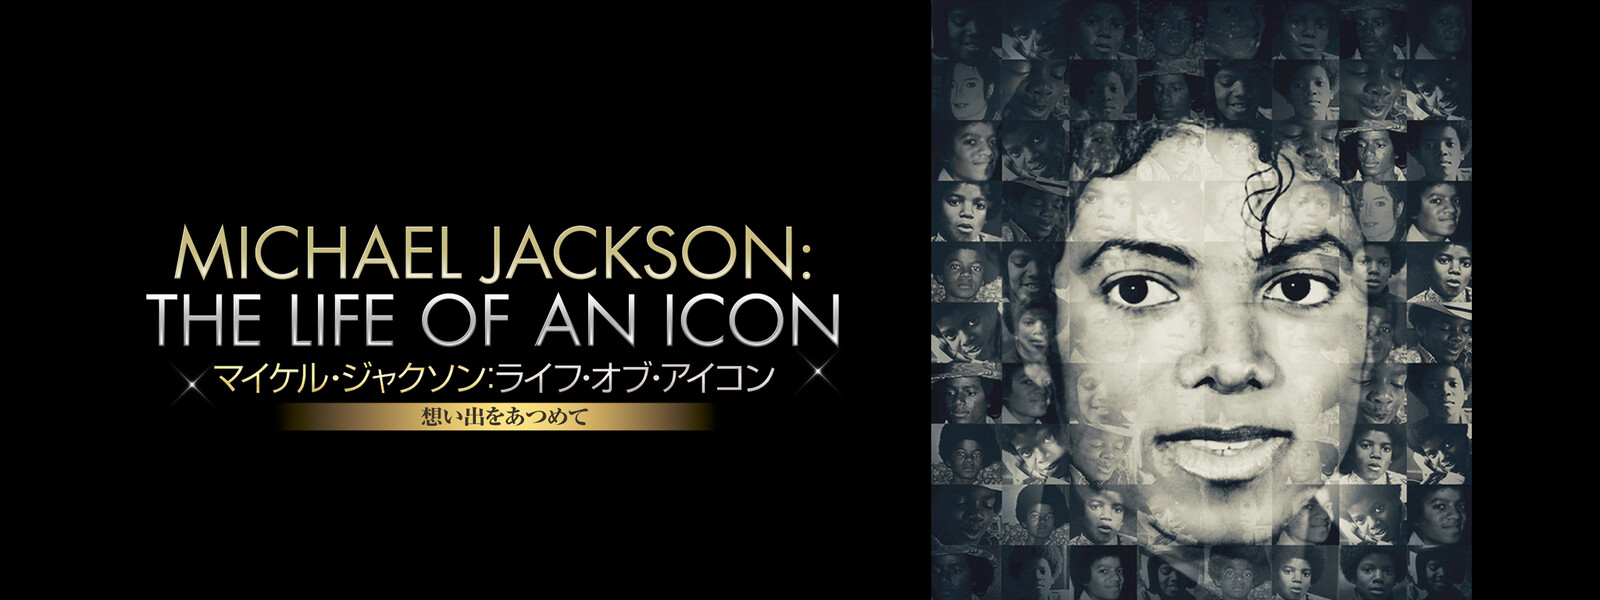 マイケル・ジャクソン　ライフ・オブ・アイコン　想い出をあつめて (字幕版)の動画 - マイケル・ジャクソン キング・オブ・ポップの素顔